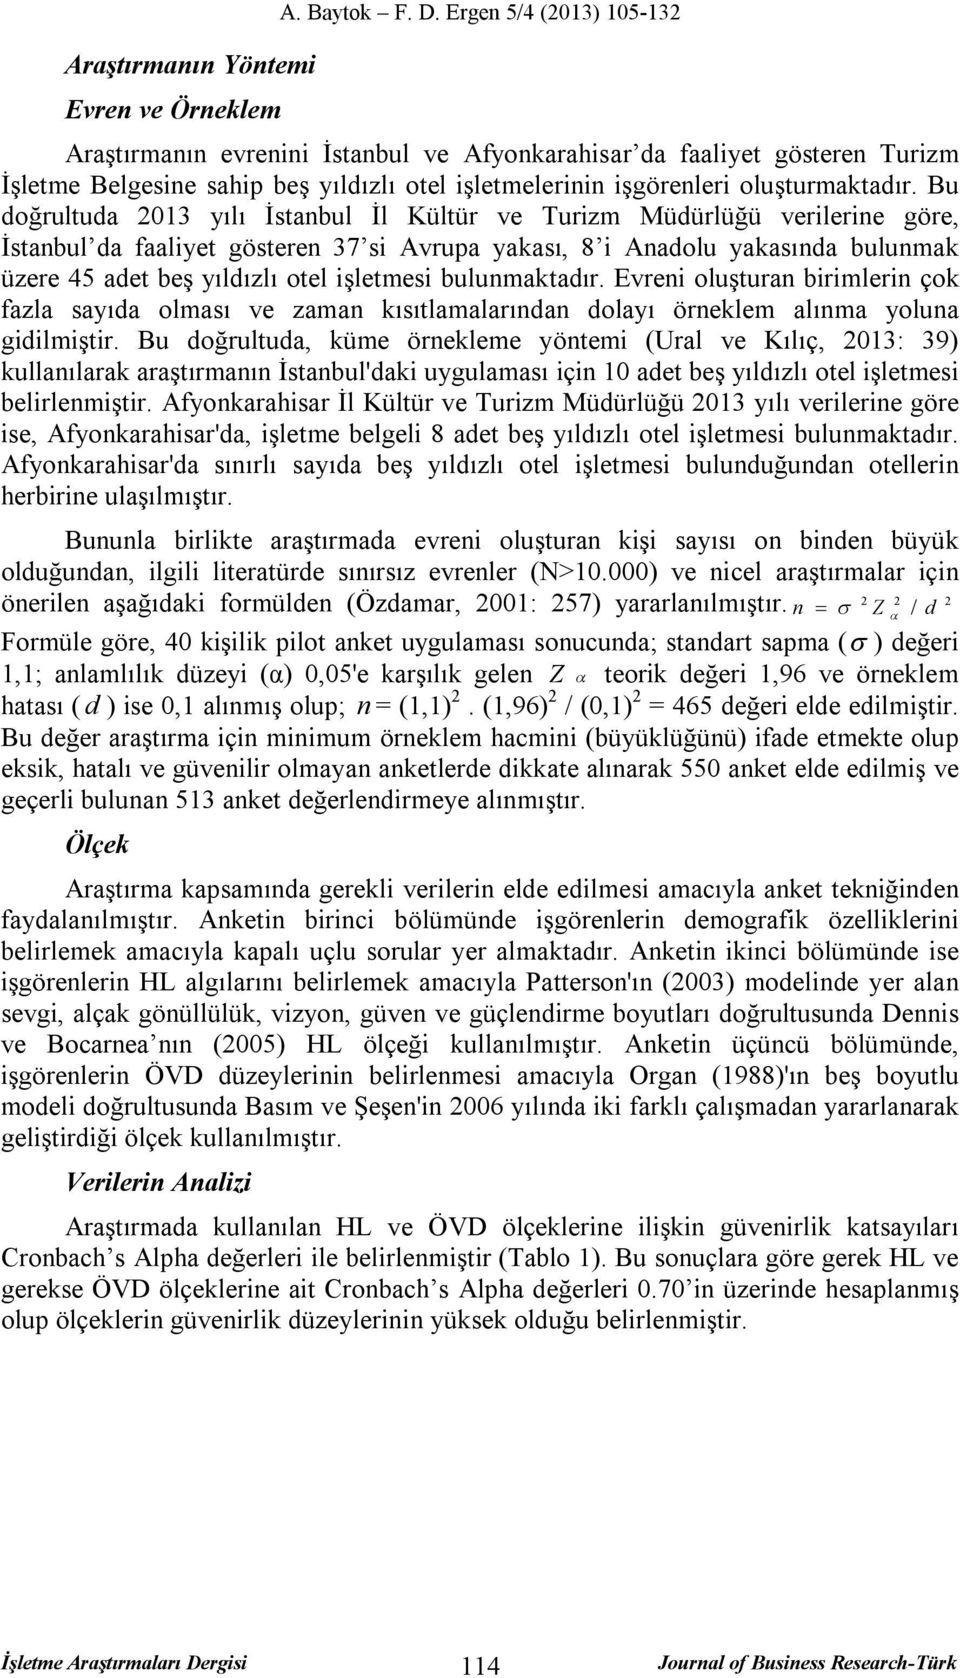 Bu doğrultuda 2013 yılı İstanbul İl Kültür ve Turizm Müdürlüğü verilerine göre, İstanbul da faaliyet gösteren 37 si Avrupa yakası, 8 i Anadolu yakasında bulunmak üzere 45 adet beş yıldızlı otel